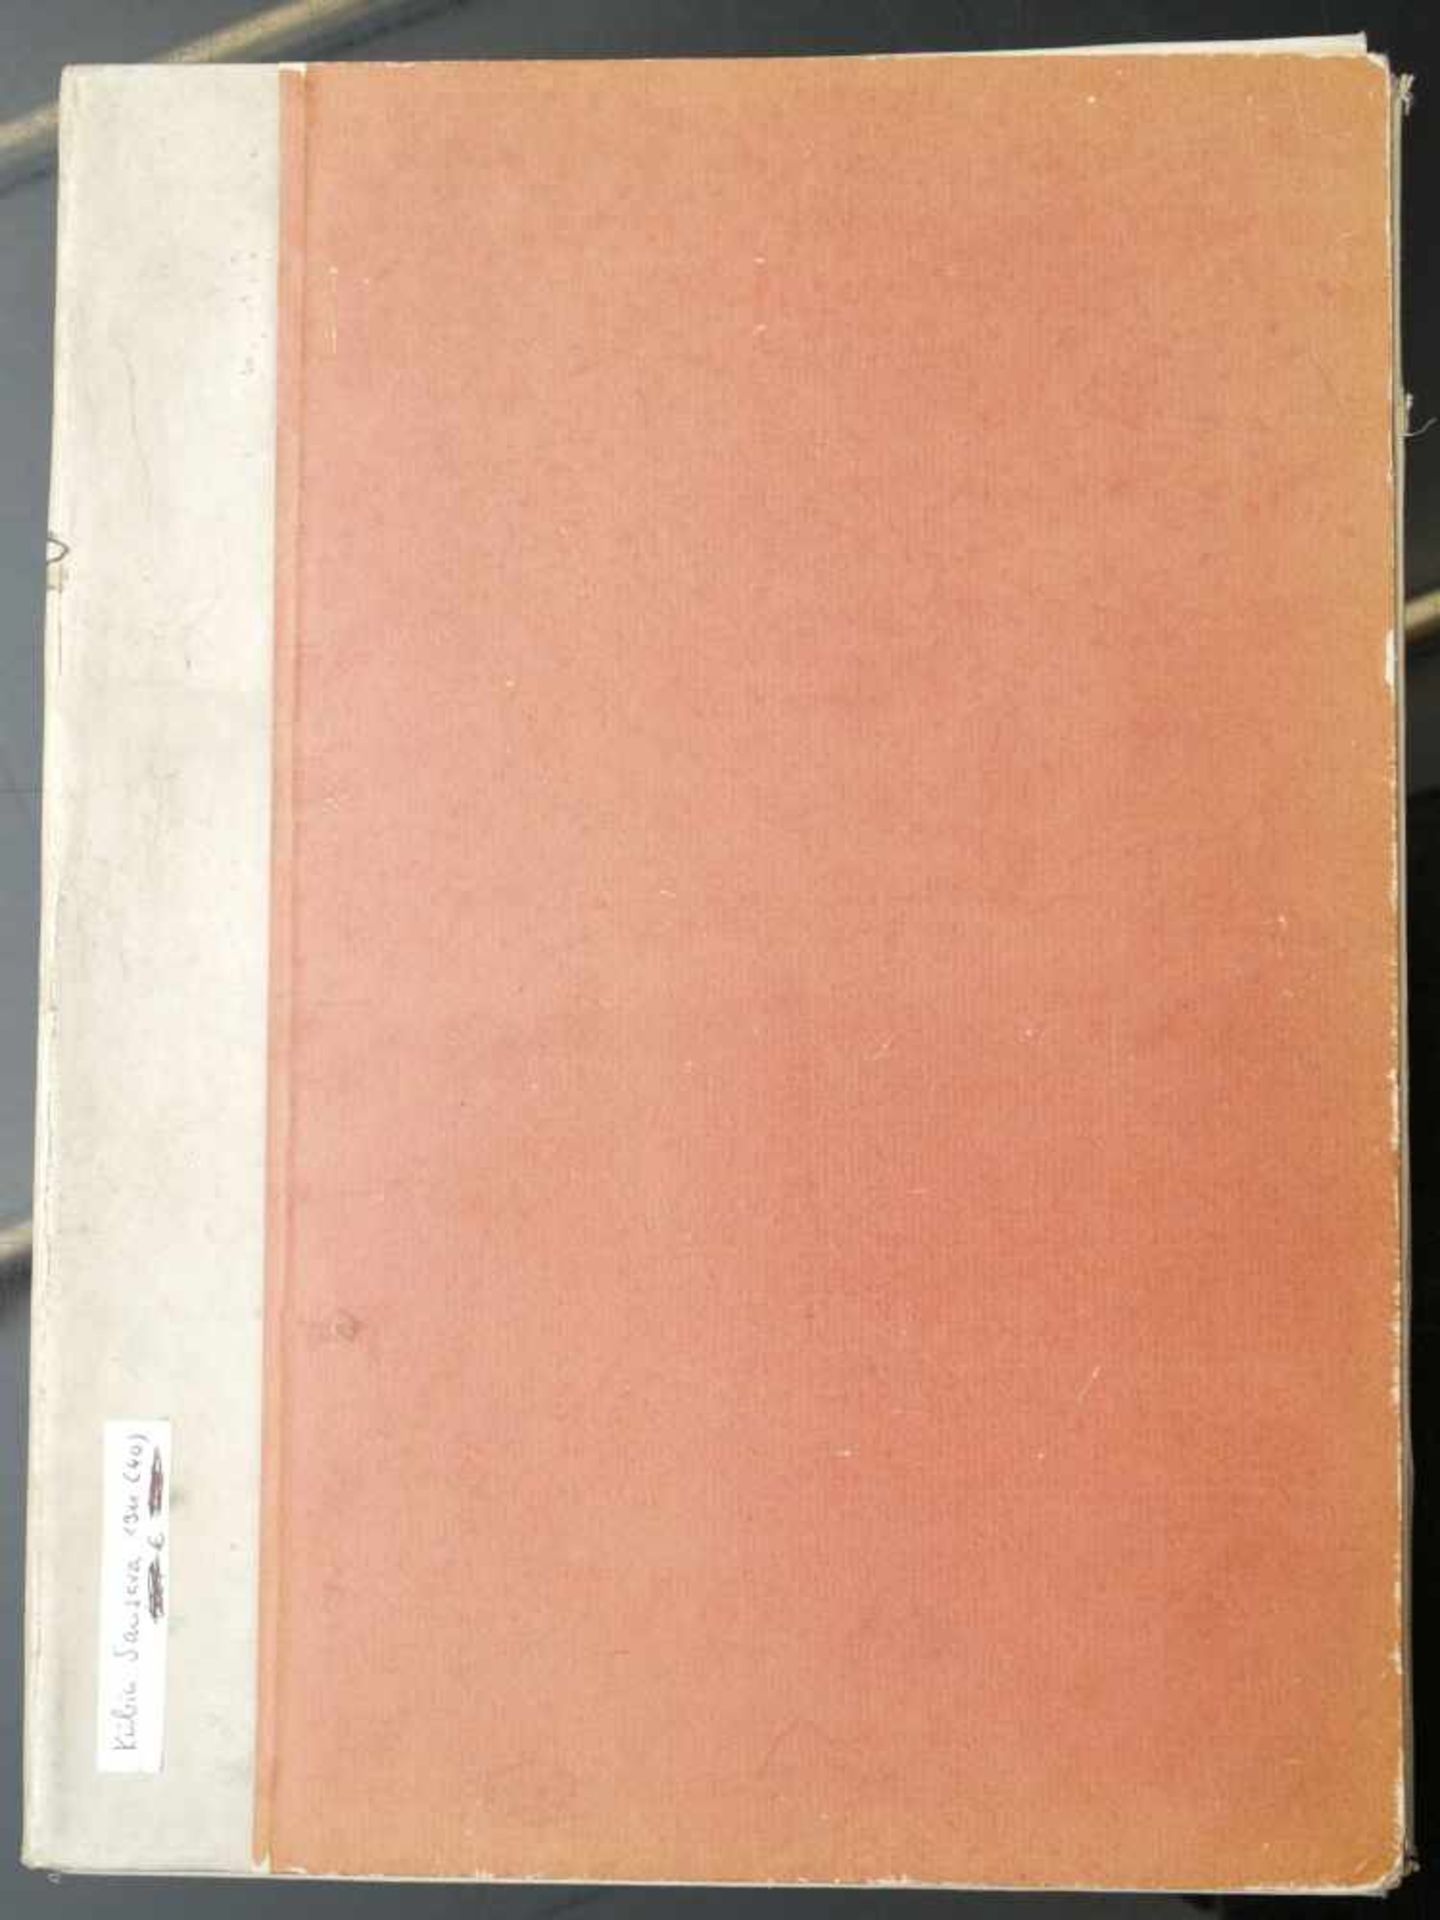 Kubin, Alfred (1877-1959) - Mappe Sansara. Ein Cyklus ohne Ende. 1911In einer Auswahl von 40